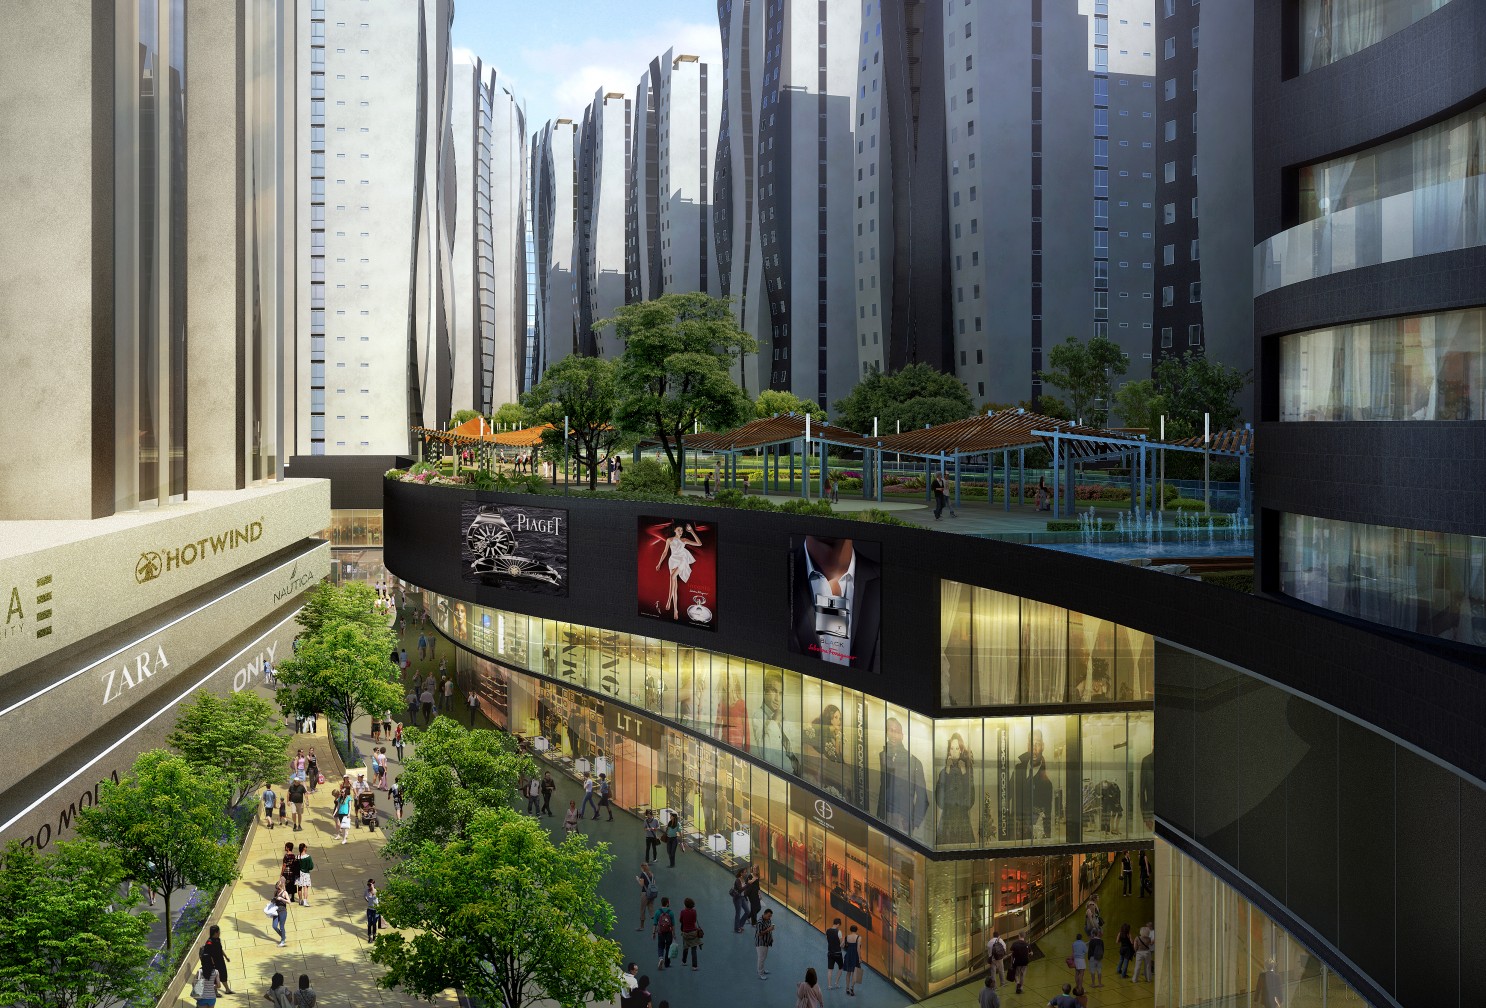 گالری عکس 5 پروژه بزرگ و چندمنظوره شهر جییوان چین  عکس برج مسکونی عکس شهرسازی عکس طراحی شهری عکس طراحی نما عکس معماری چین عکس هتل برج